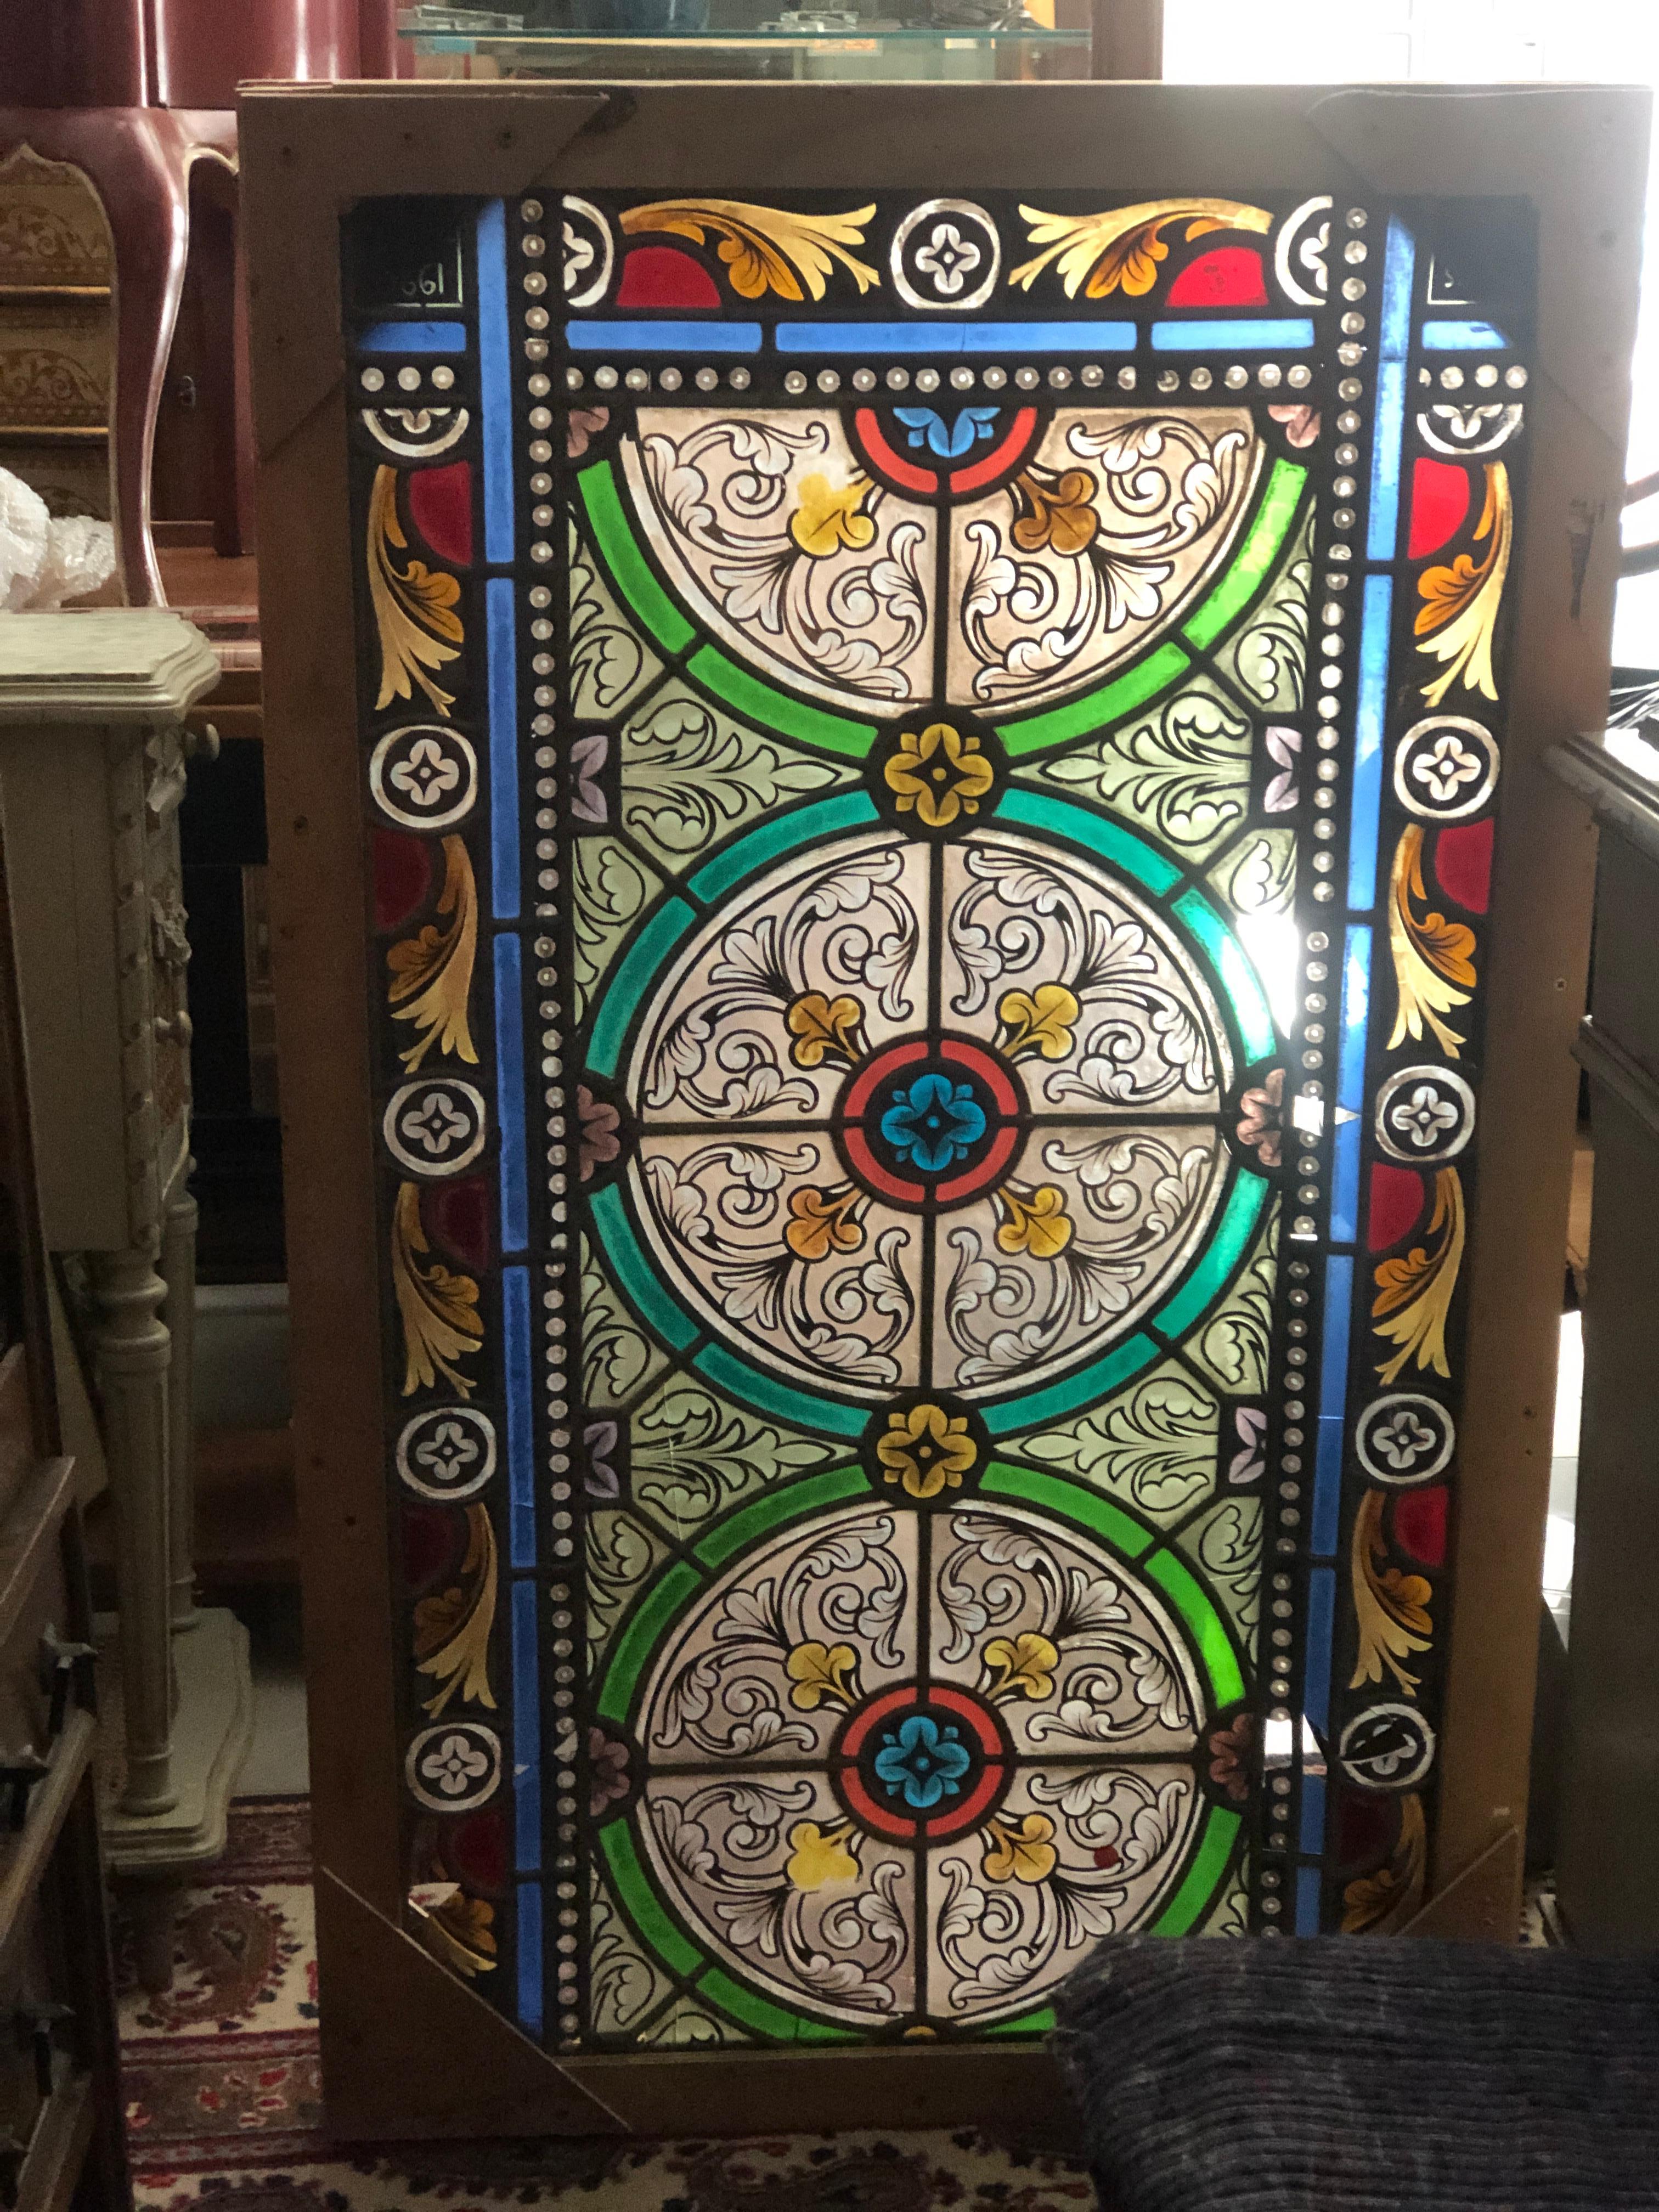 Magnifique panneau de vitrail multicolore avec une ornementation florale et géométrique détaillée. Il y a quelques petites pièces manquantes mais aucune restauration n'a été effectuée.
Il est placé dans un cadre en bois afin de rester en sécurité.